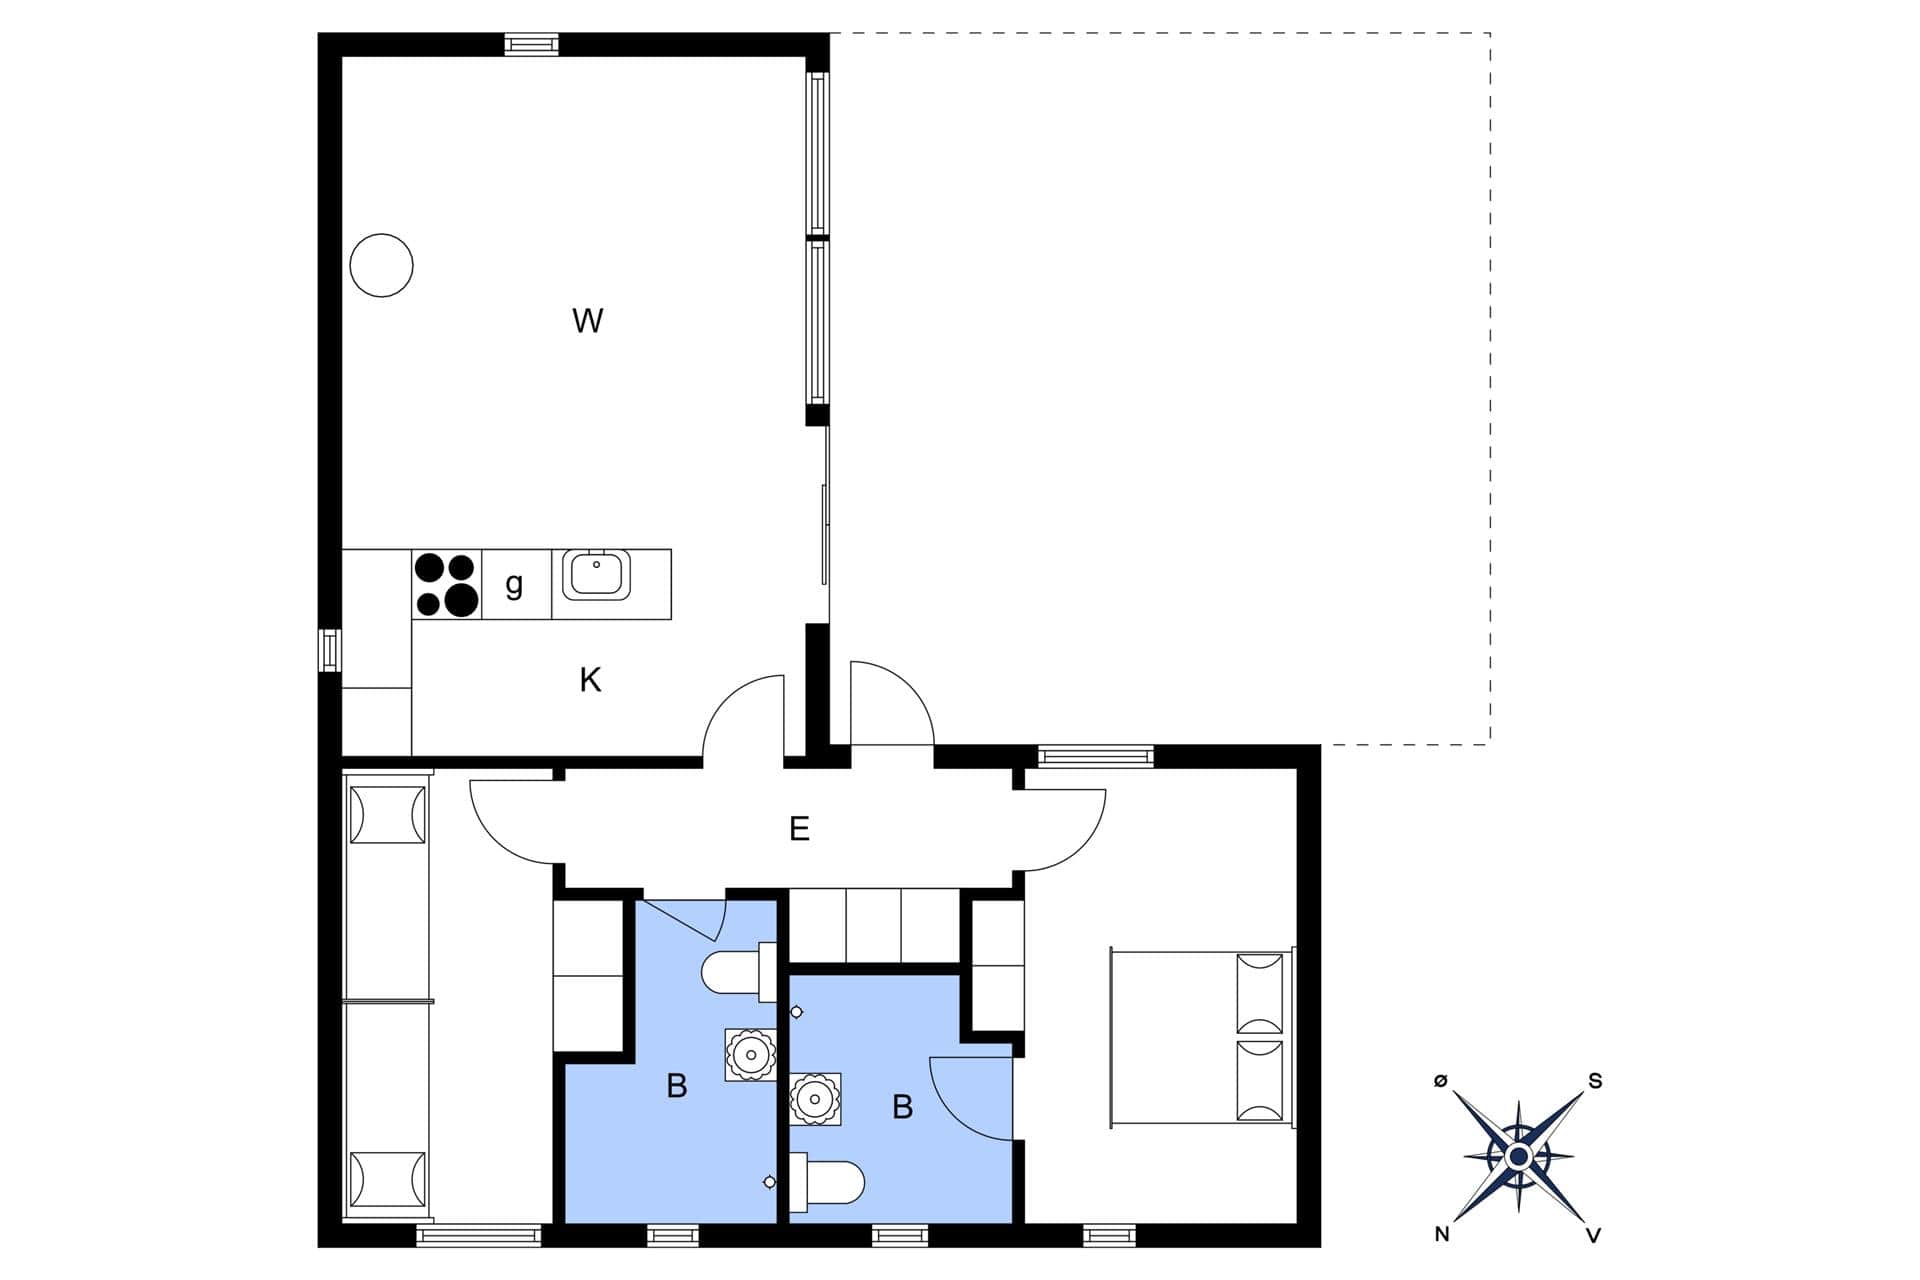 Interior 13-3 Holiday-home M642751, Oddevejen 8, DK - 5500 Middelfart